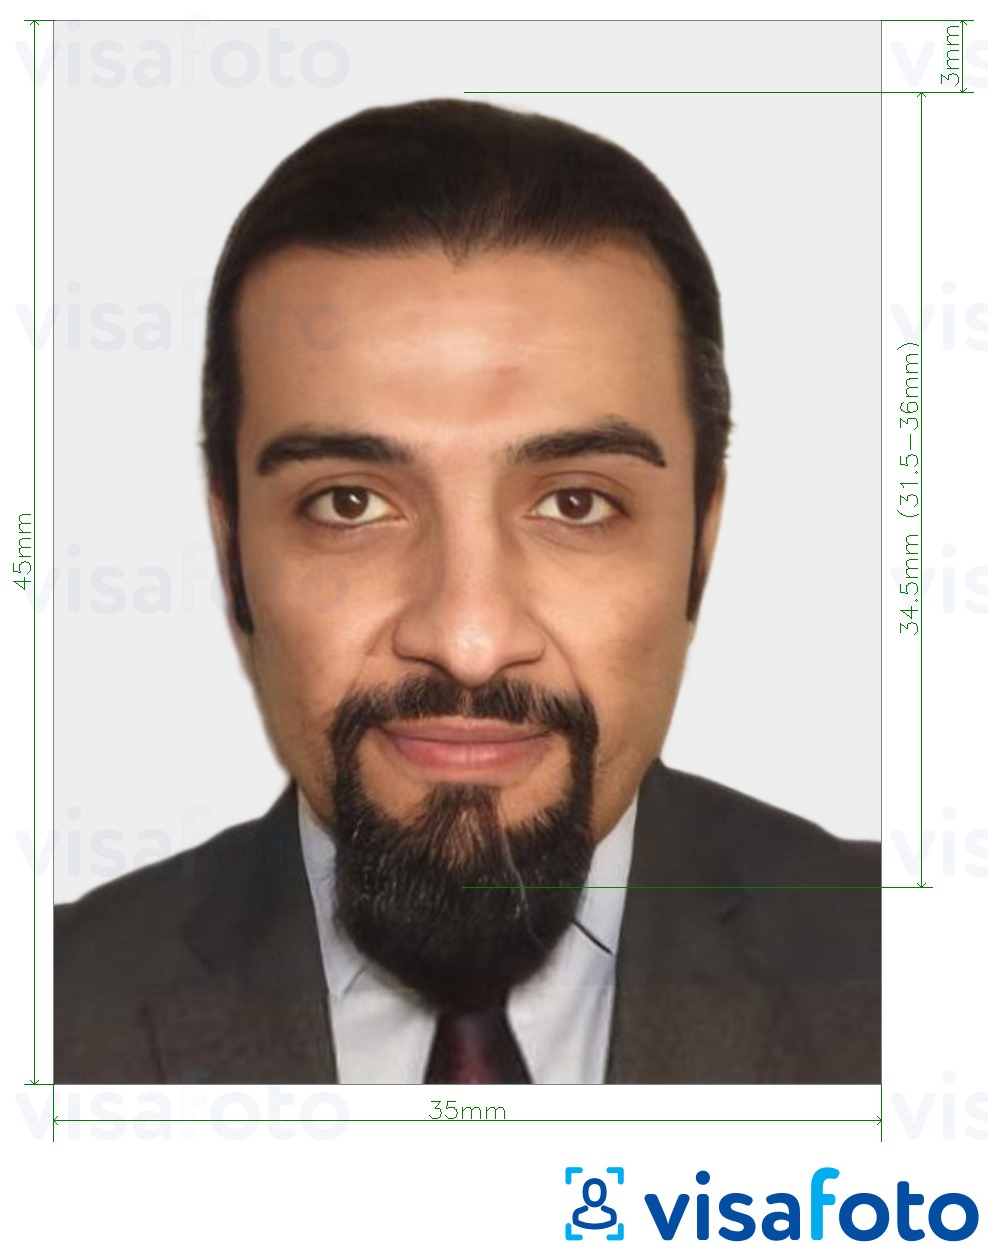 Contoh dari foto untuk Kartu ID Mauritania 35x45 mm (3,5x4,5 cm) dengan ukuran spesifikasi yang tepat